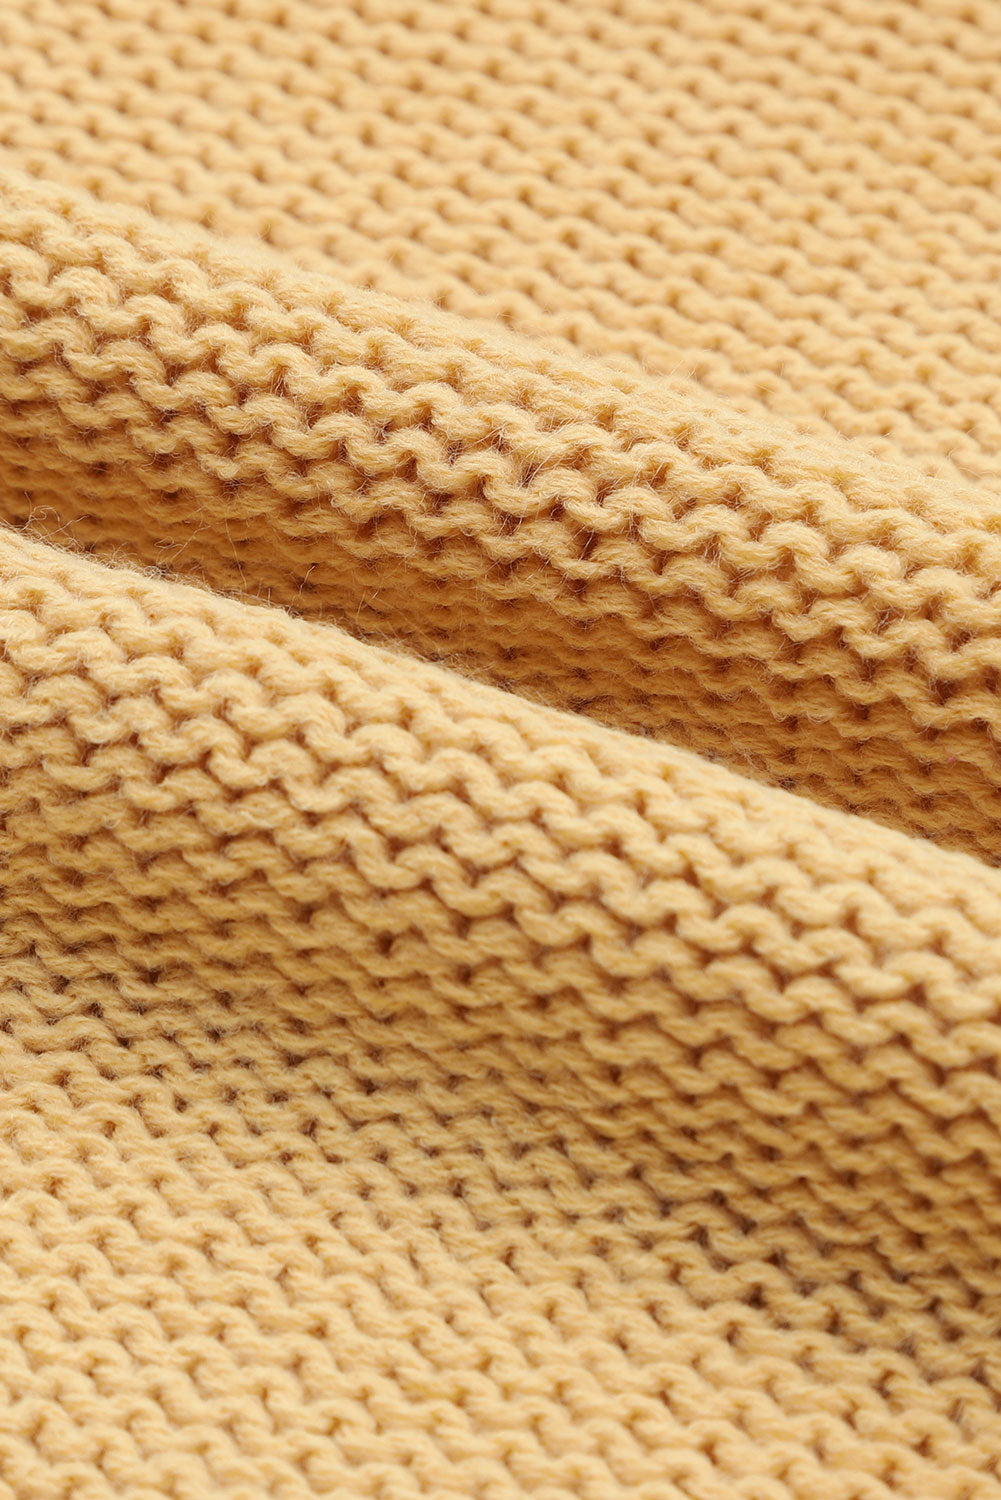 Pleteni džemper s izdubljenim mjehurićastim rukavima kaki boje